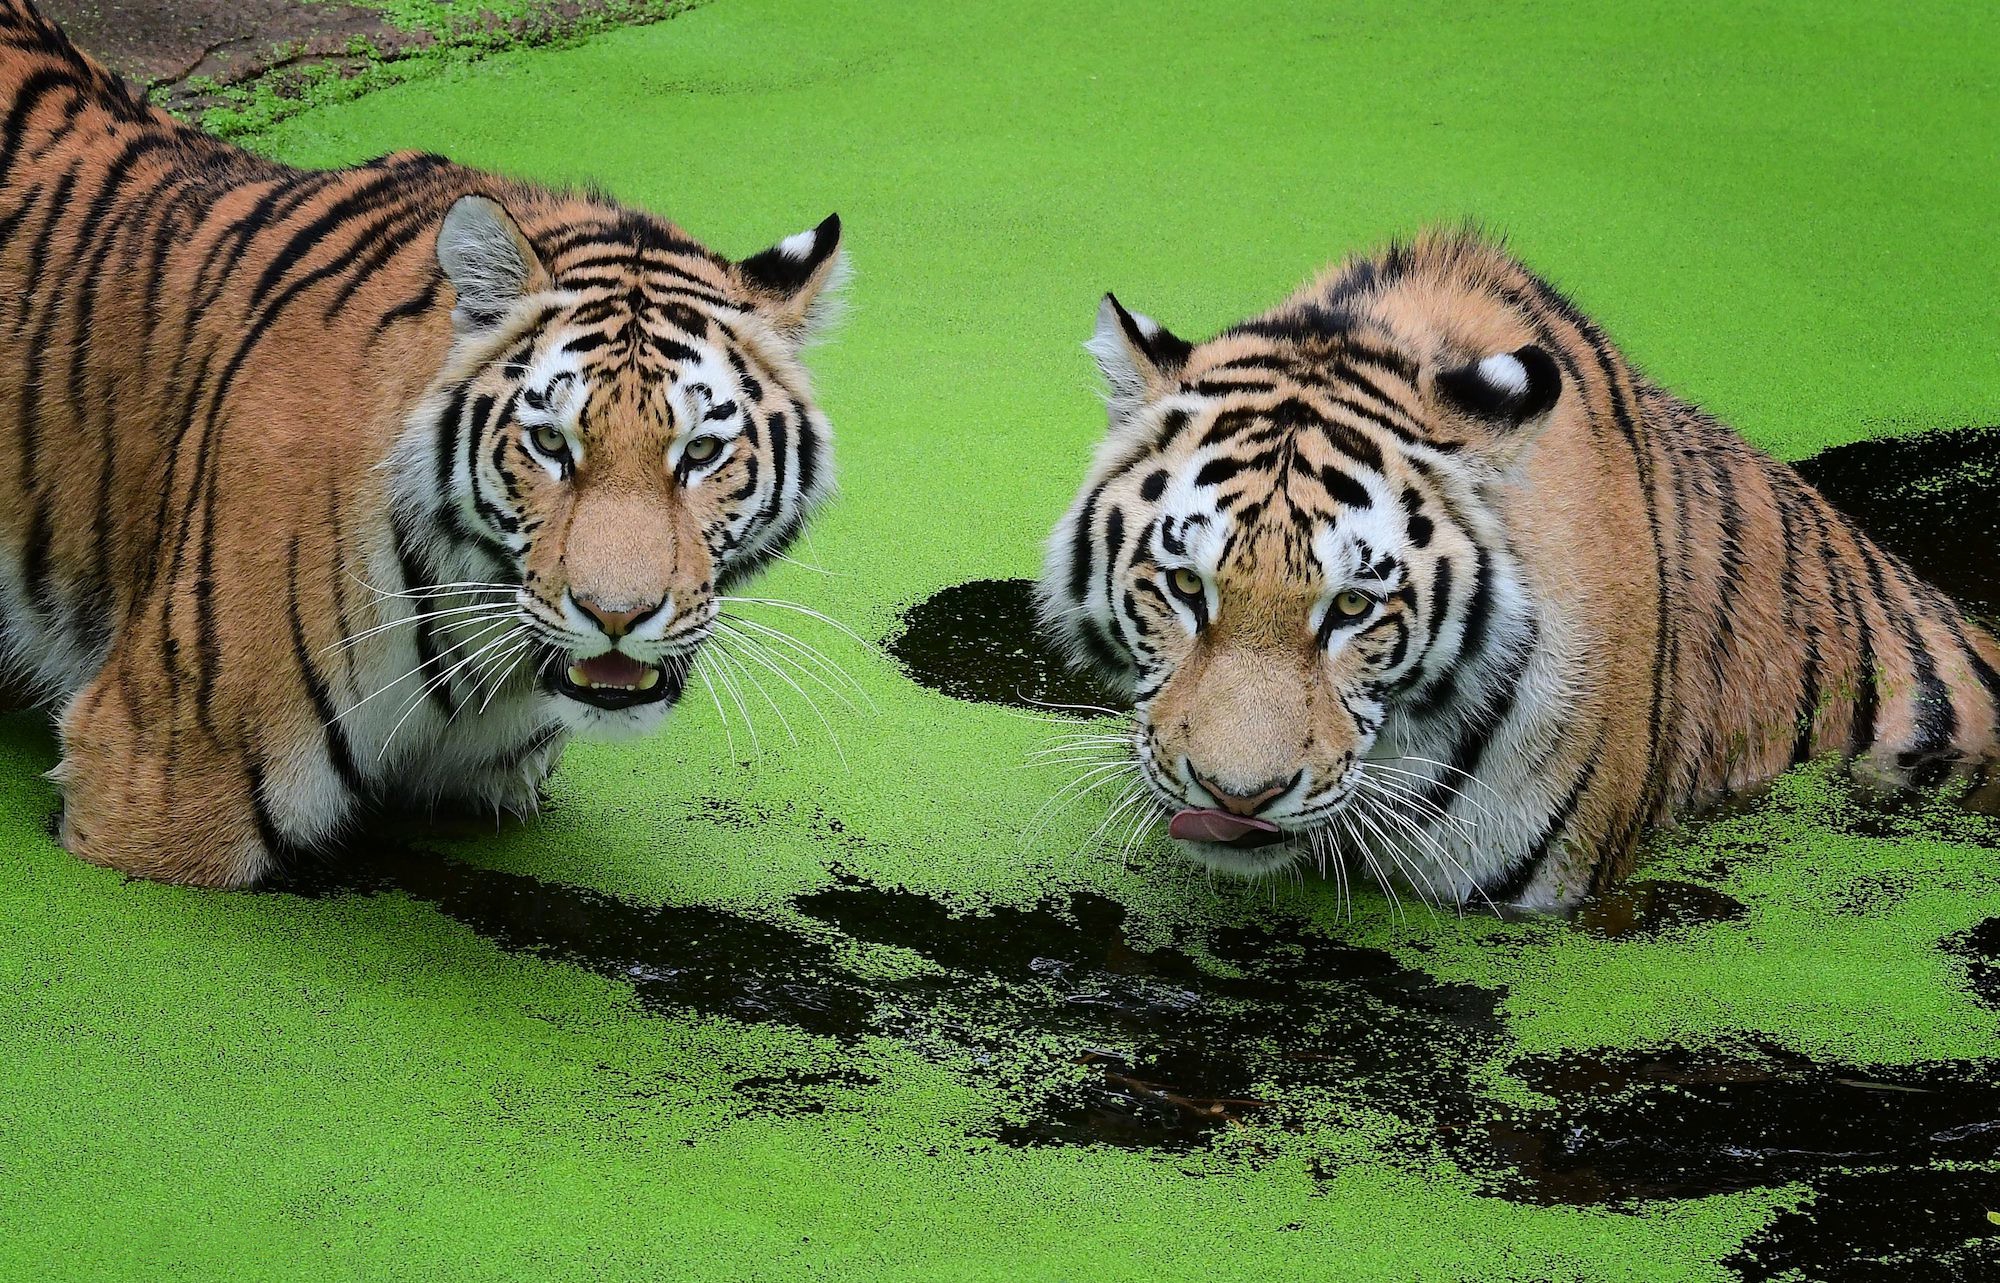 Обои на стол амурский тигр, хищник · бесплатная фотография от Fonwall